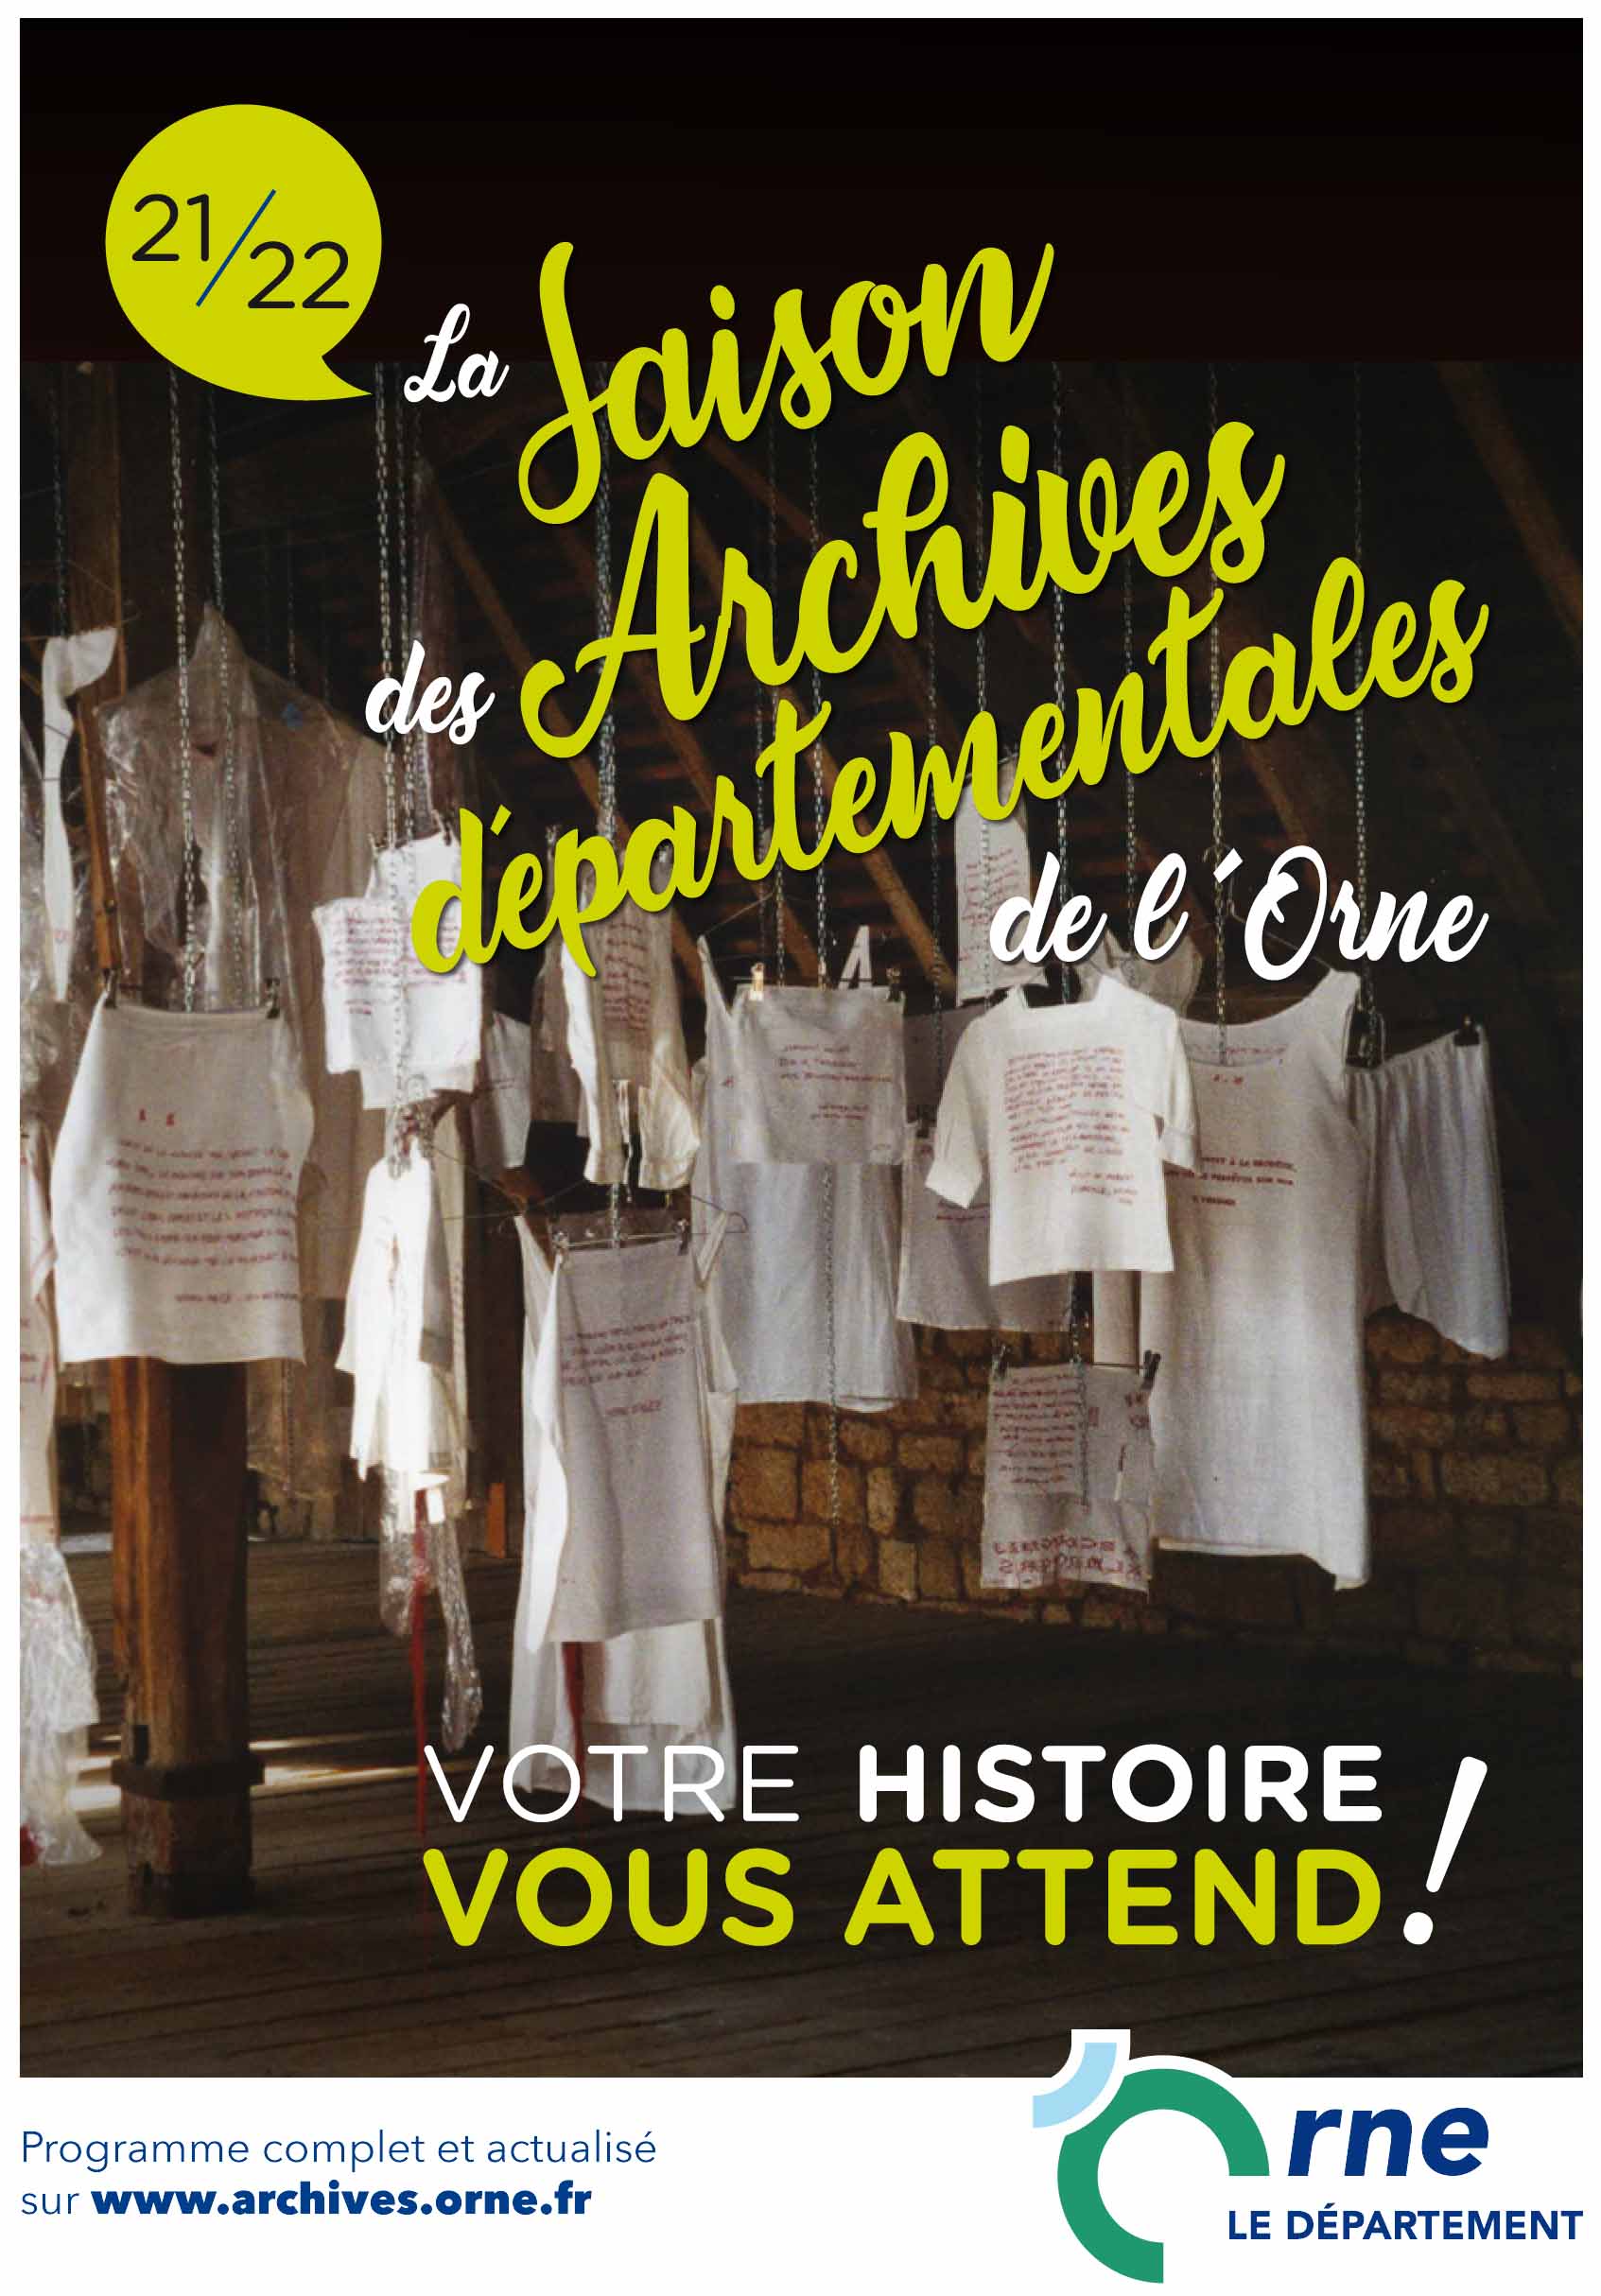 La saison 2021/22 des Archives départementales de l'Orne